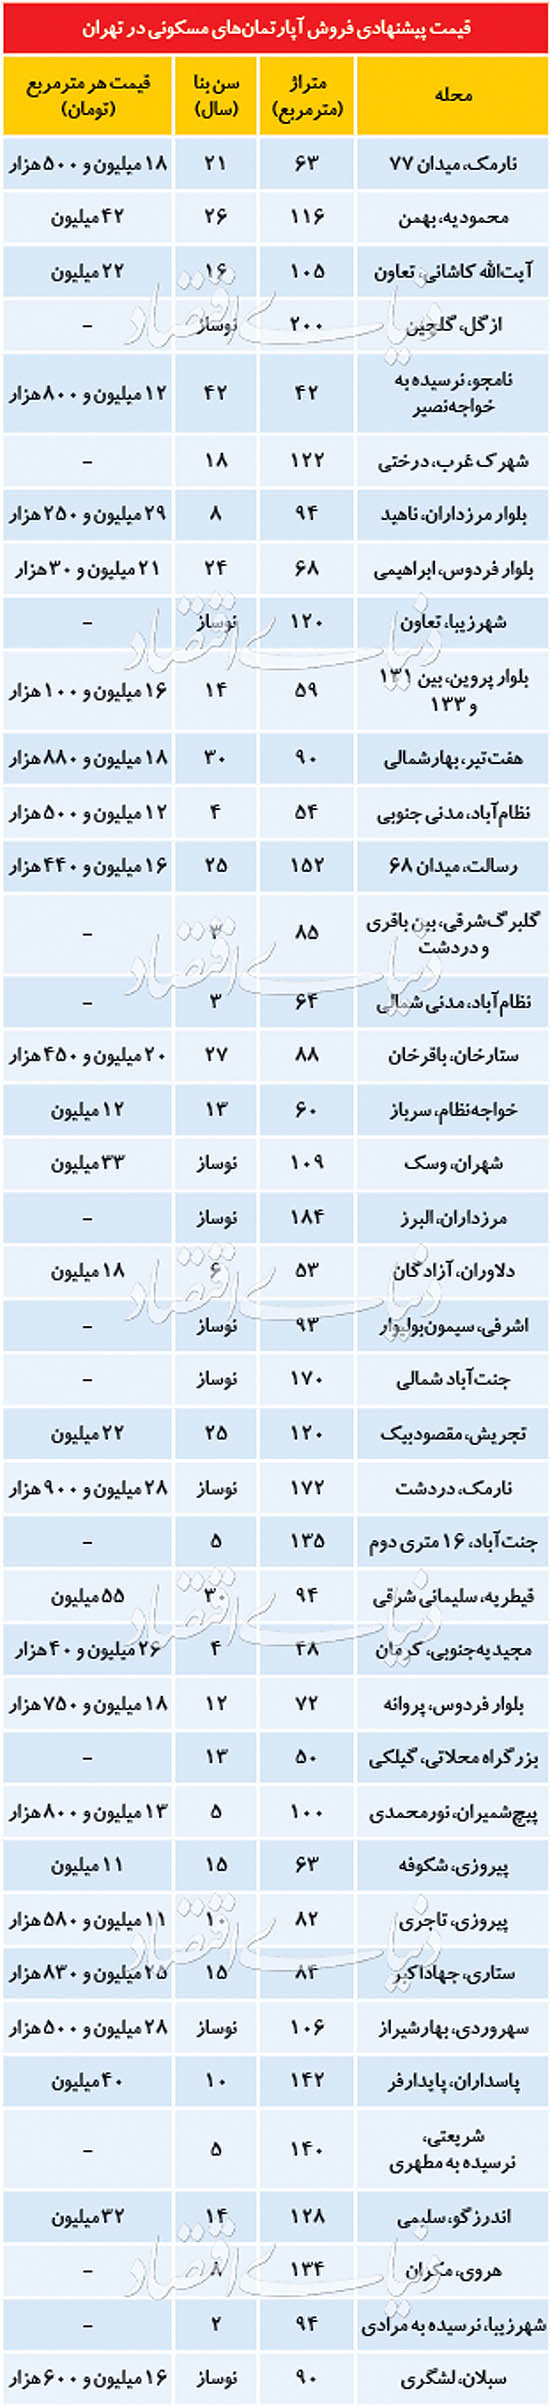 قیمت مسکن 24 خرداد